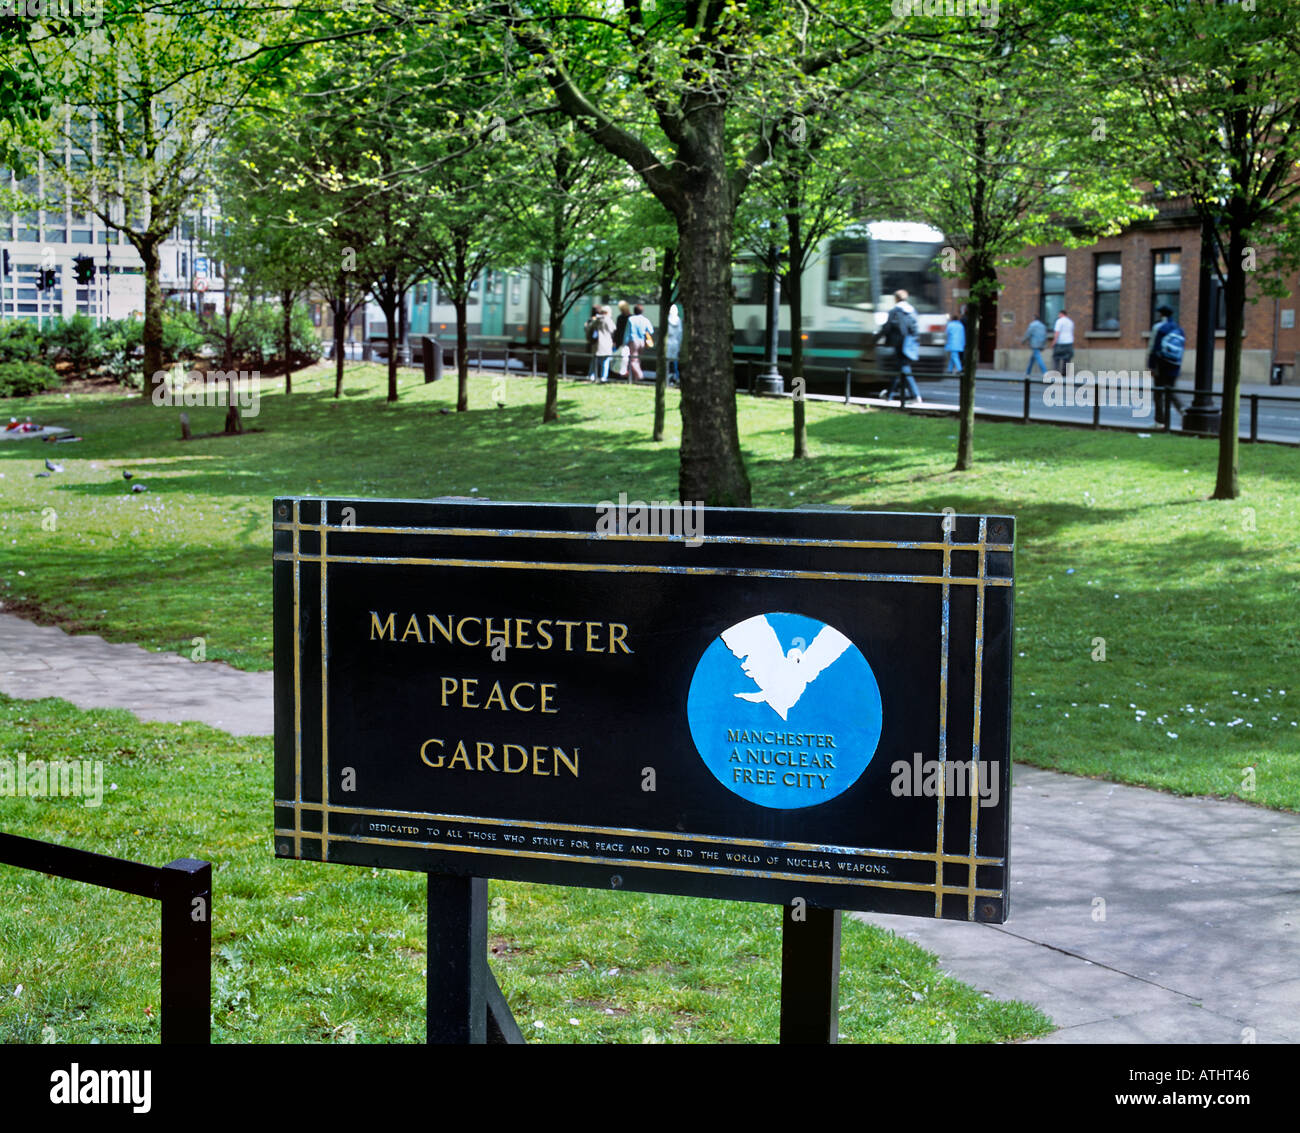 L'autorité locale sans nucléaire logo sur une affiche dans le jardin de la paix de Manchester, St Peters Square, Manchester. Banque D'Images